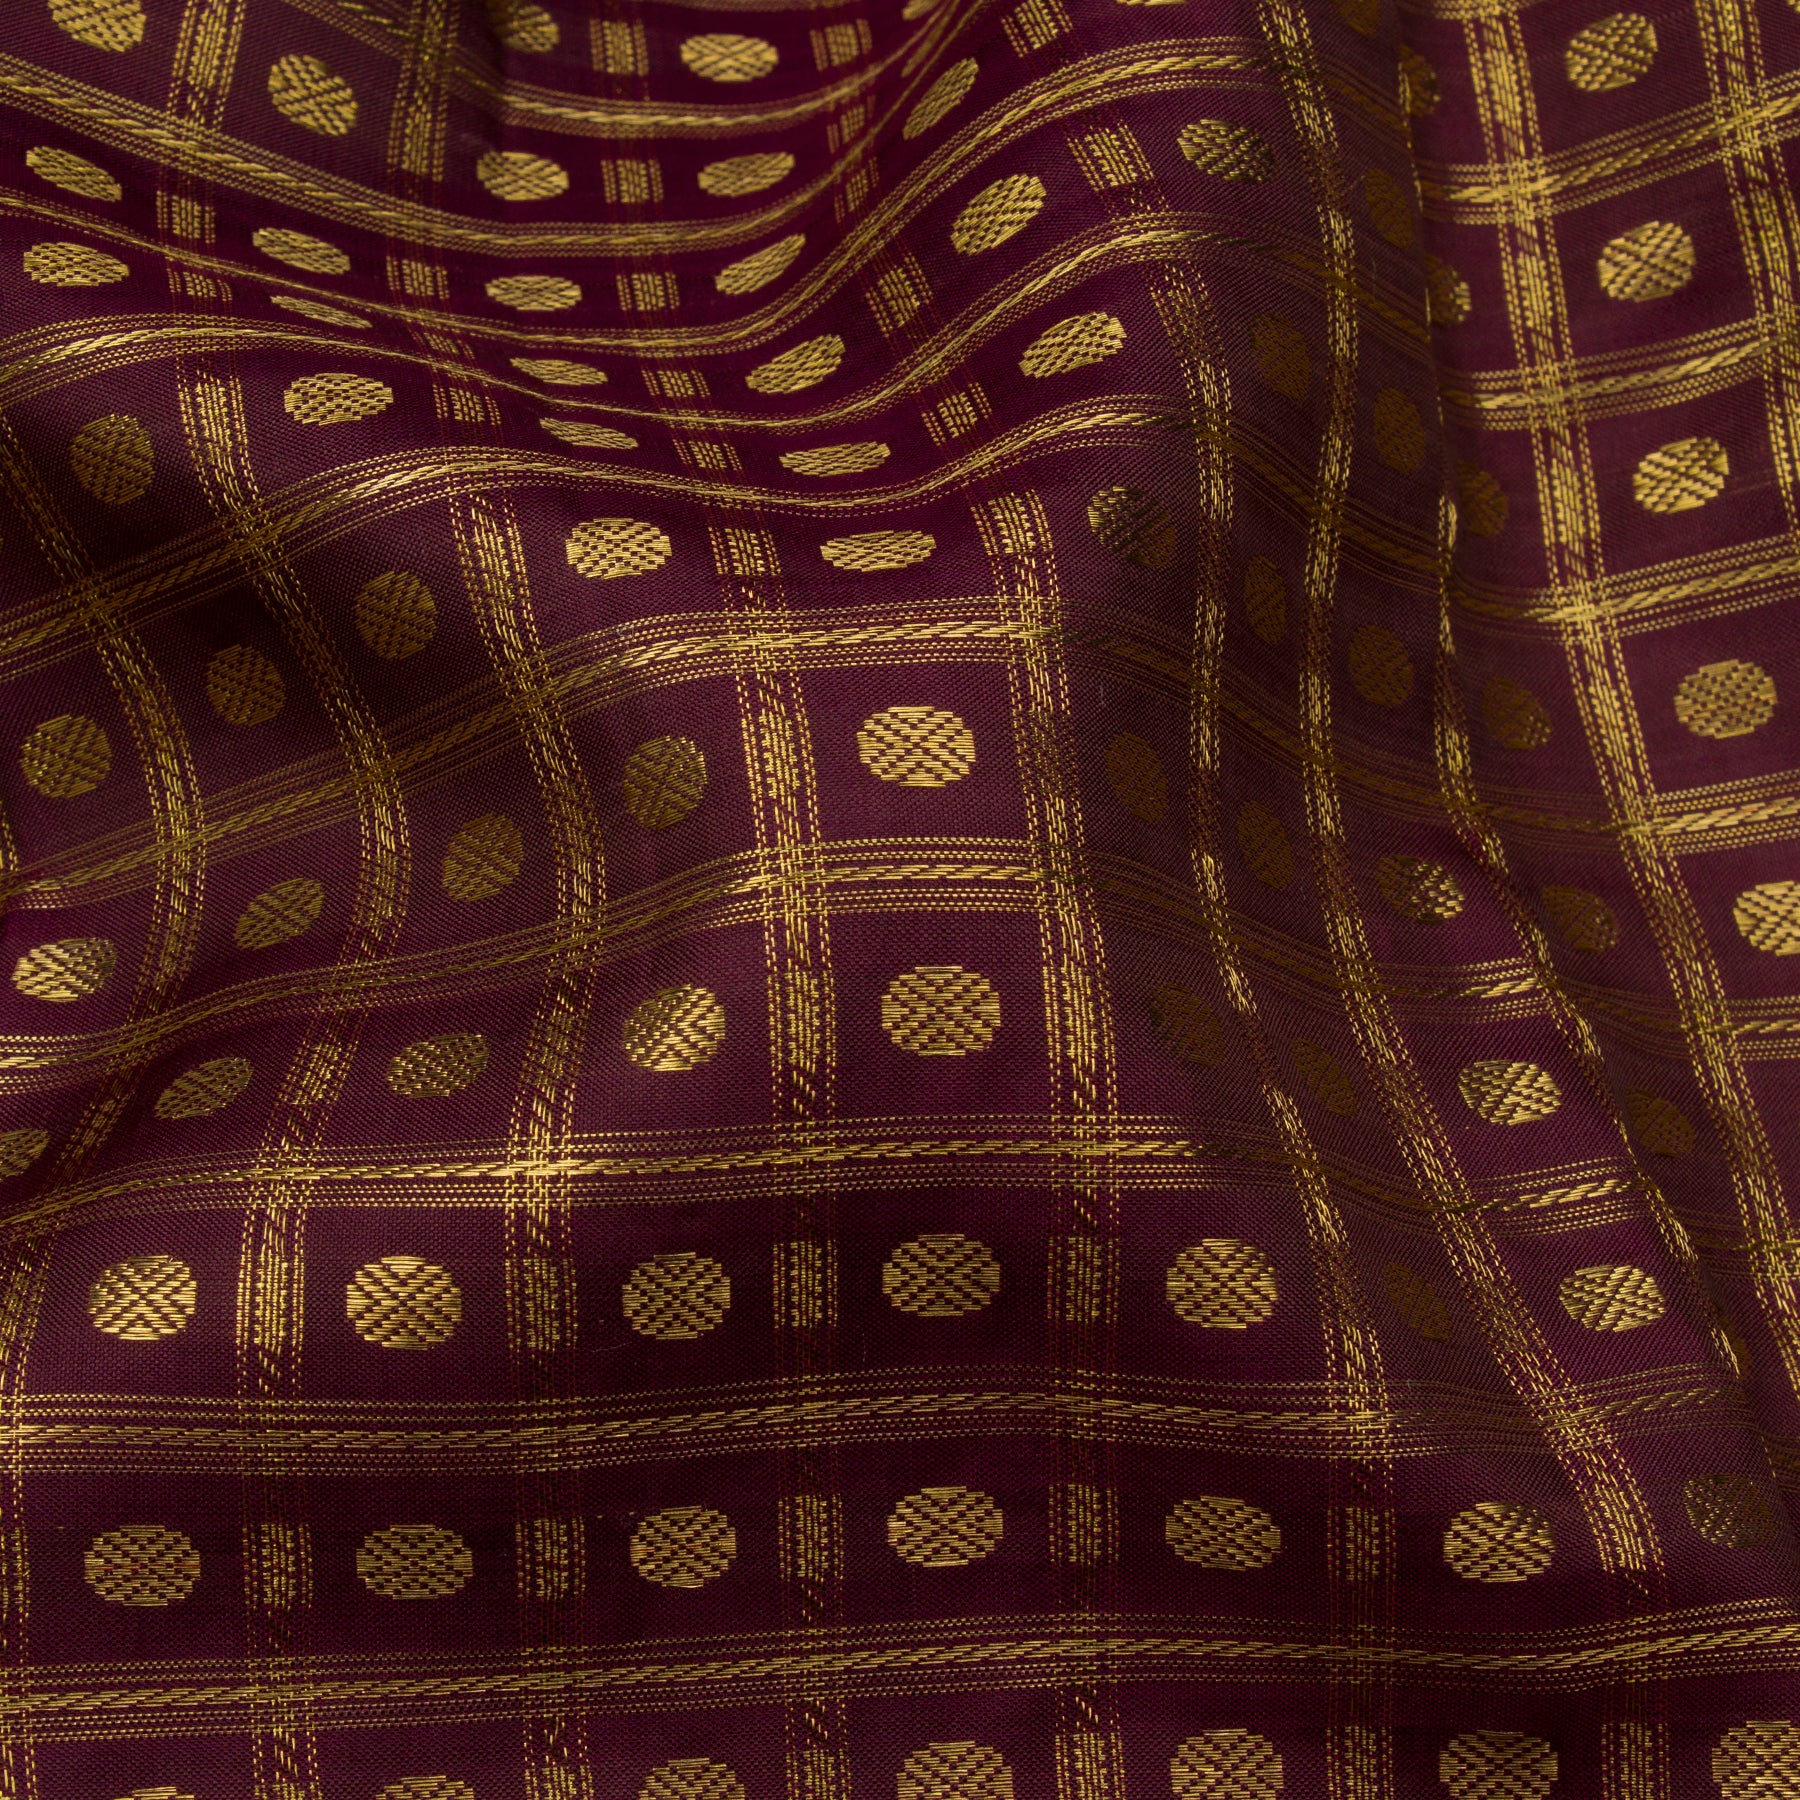 Kanakavalli Kanjivaram Silk Sari 23-041-HS001-14054 - Fabric View